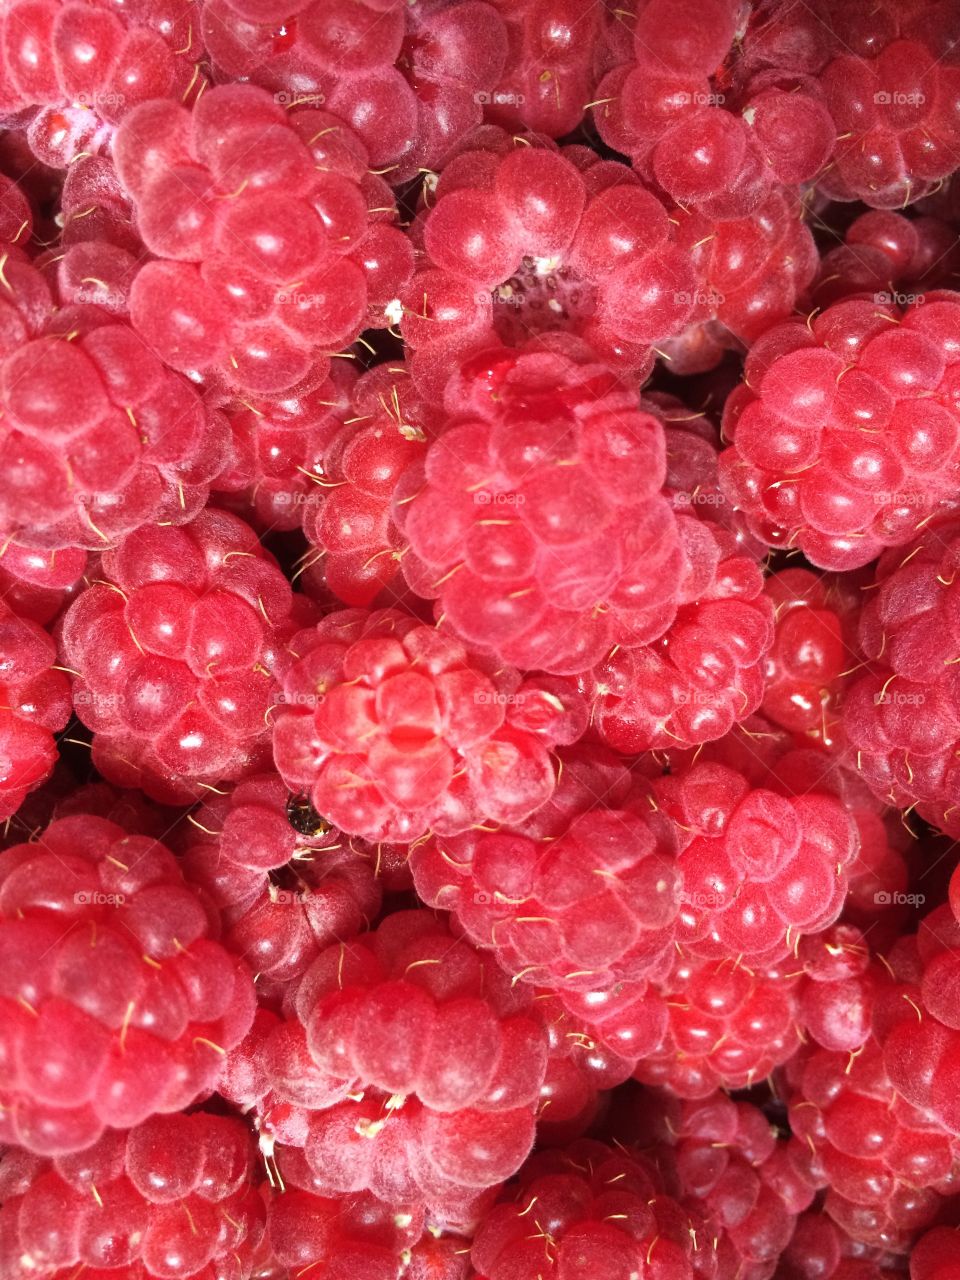 Full frame of fresh raspberries